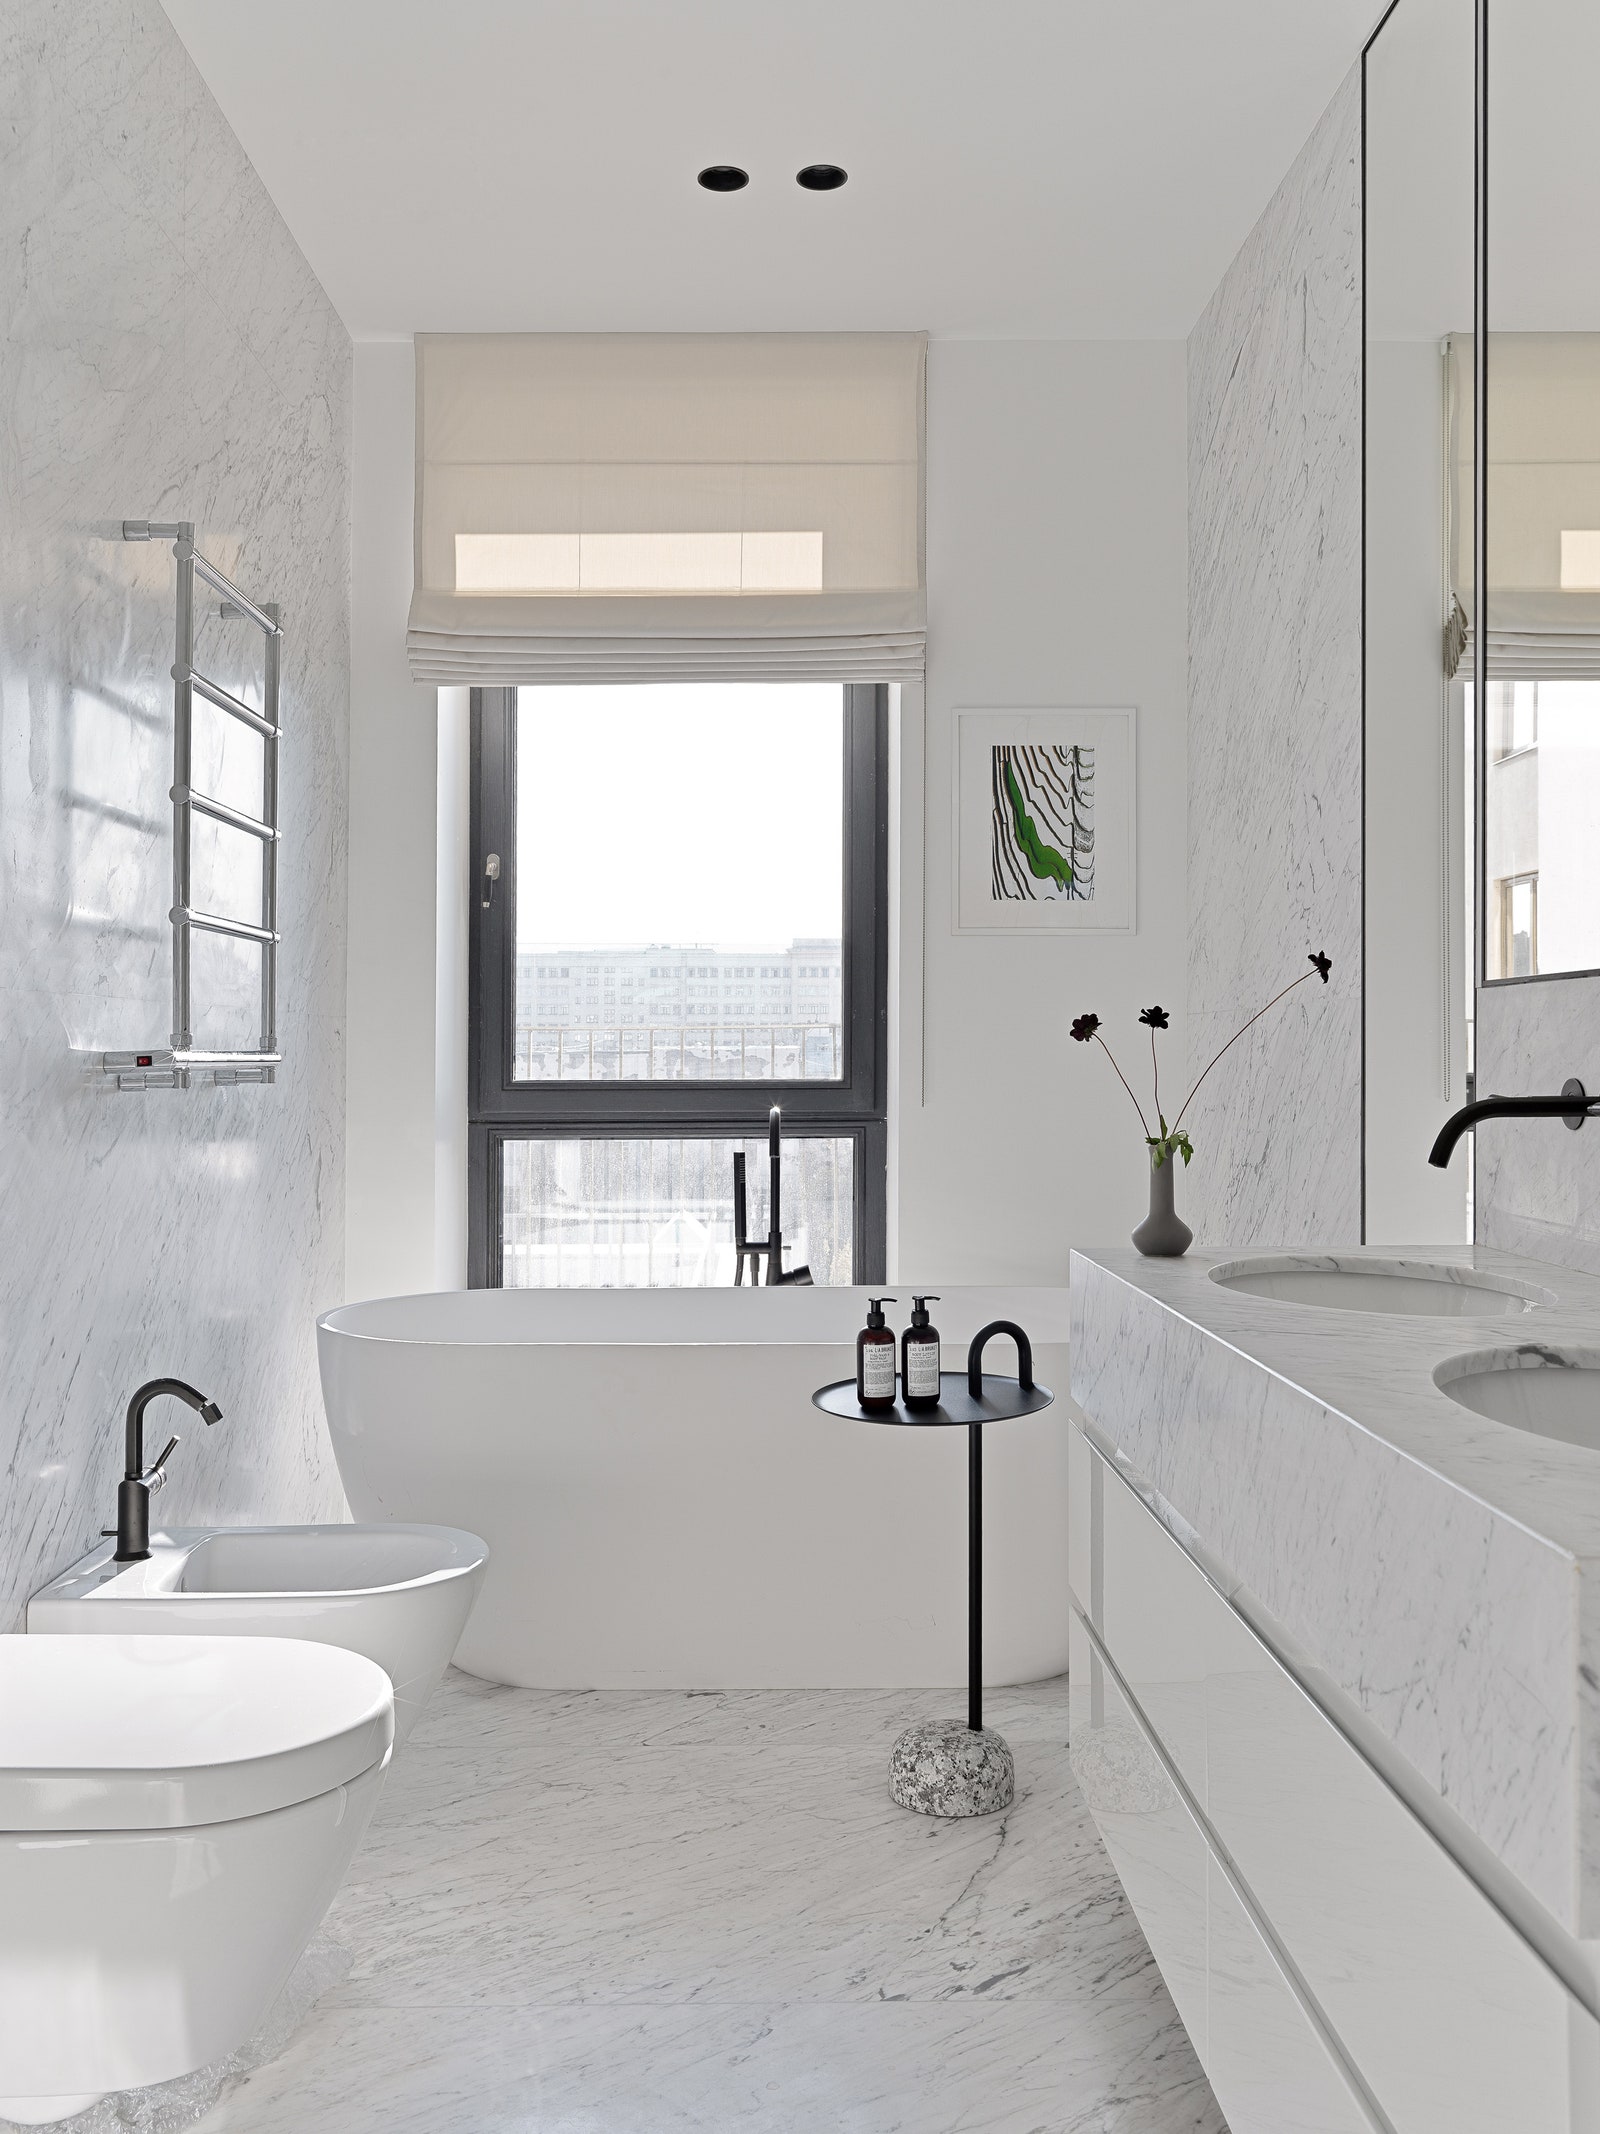 Хозяйская ванная. Стены отделаны слэбами мрамора Carrara сантехника Dornbracht столик GK Concept.